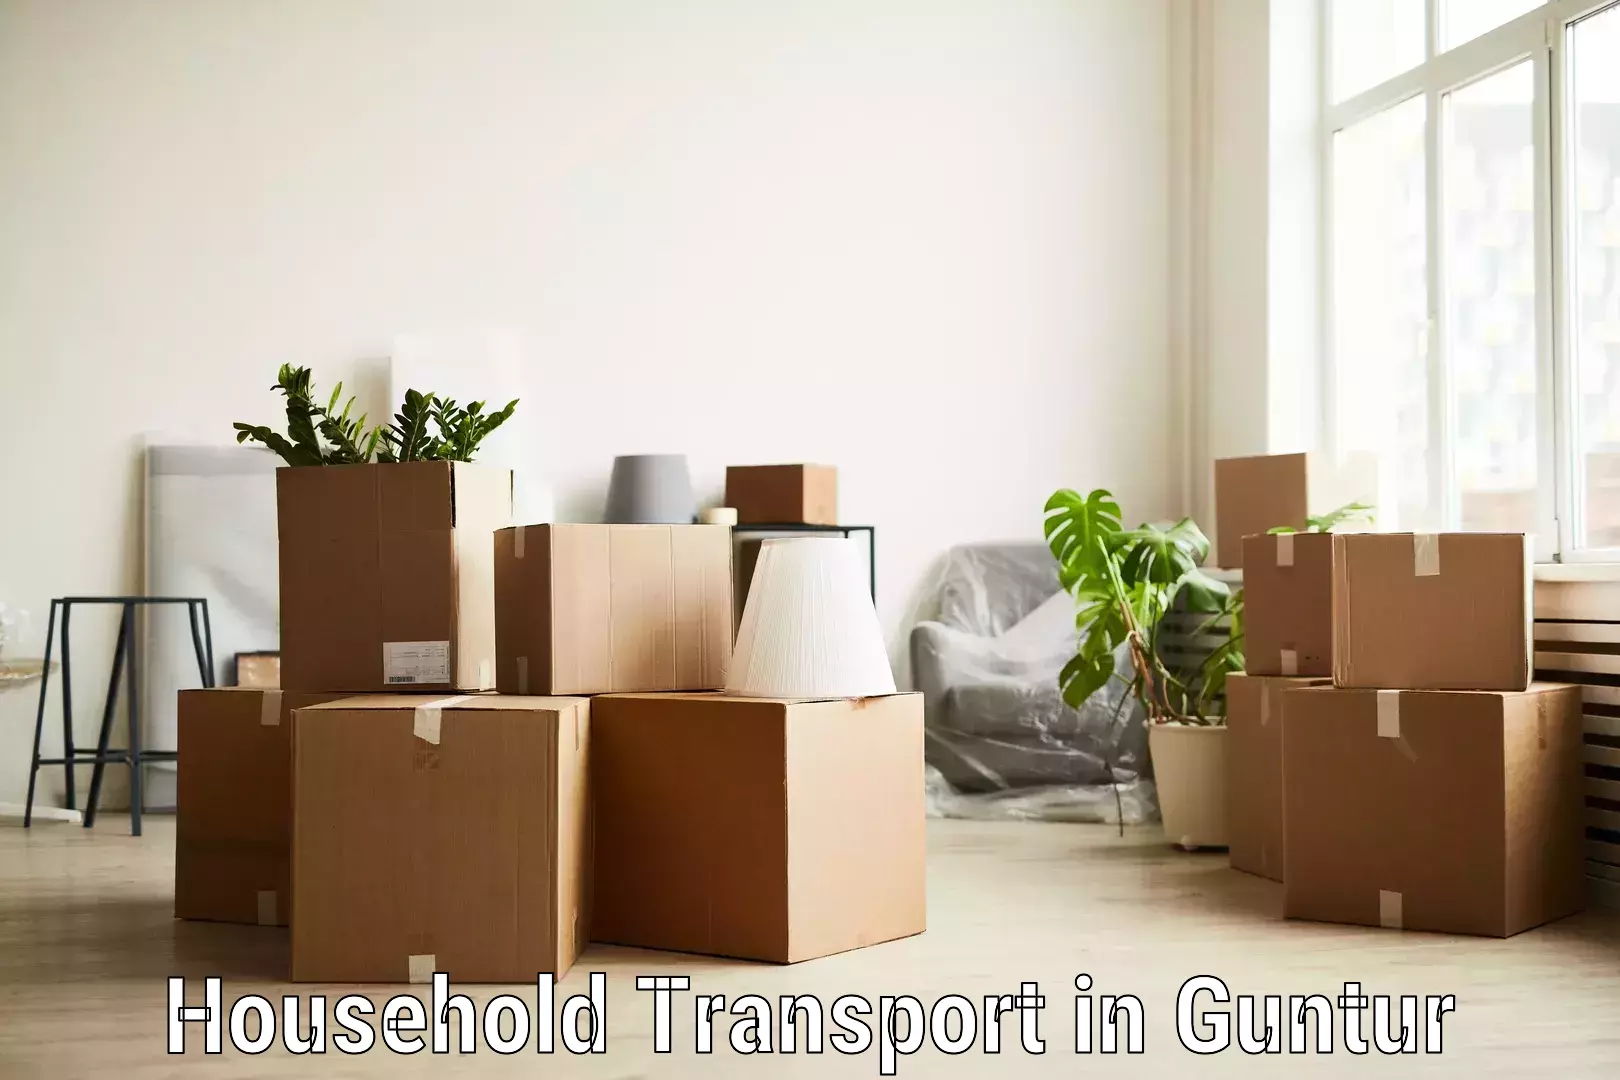 Premium furniture transport in Guntur